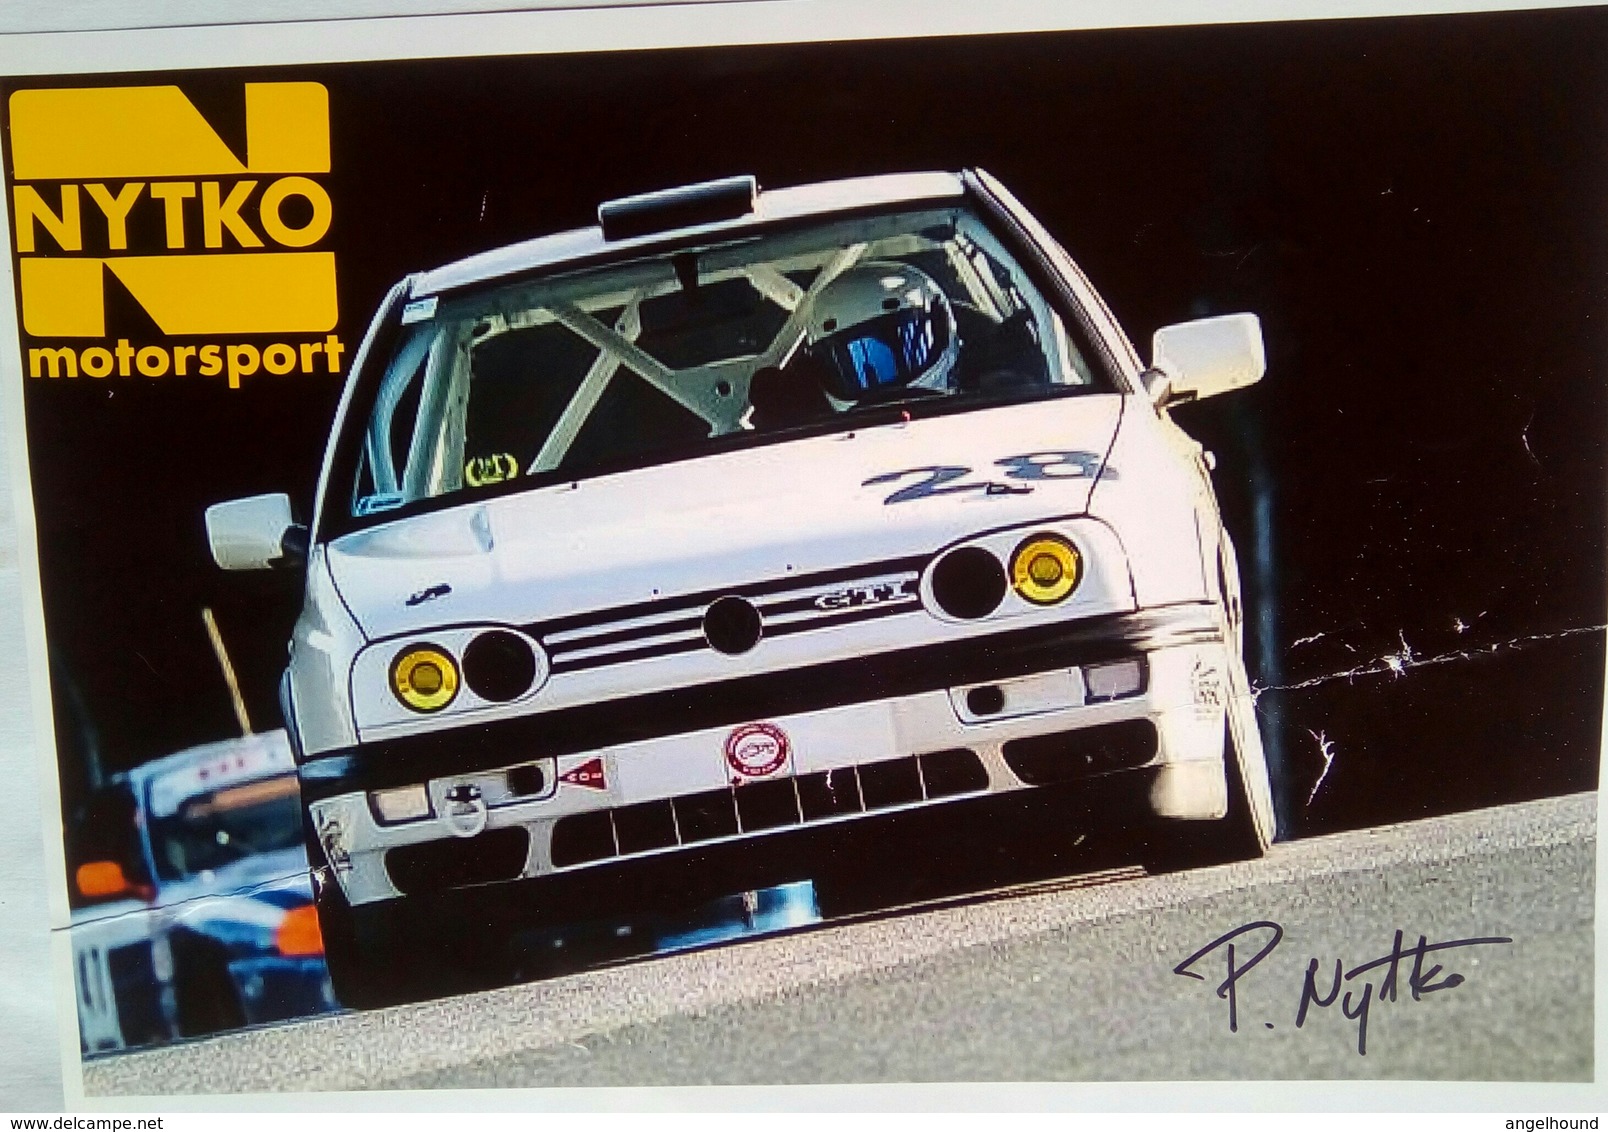 P Nytko  ( Nytko Motorsport) - Autografi